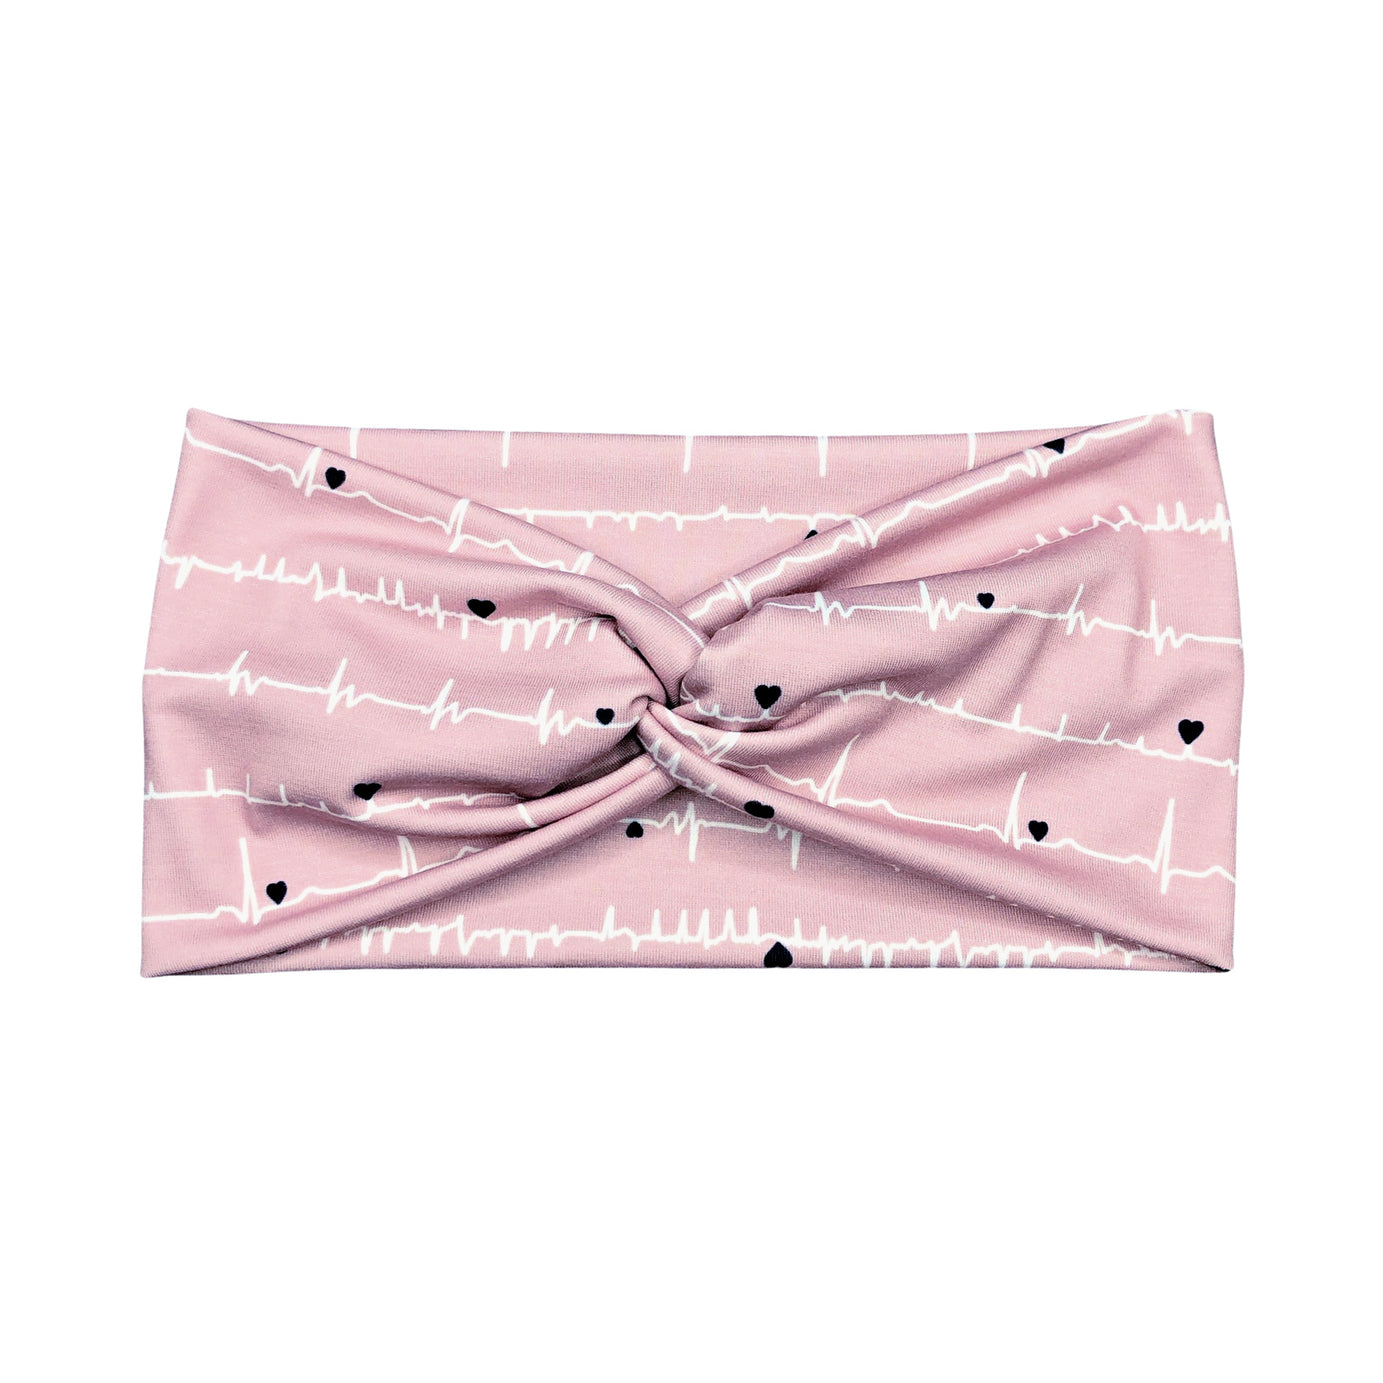 Wide Dusty Pink EKG Nurse Print Headband for Women